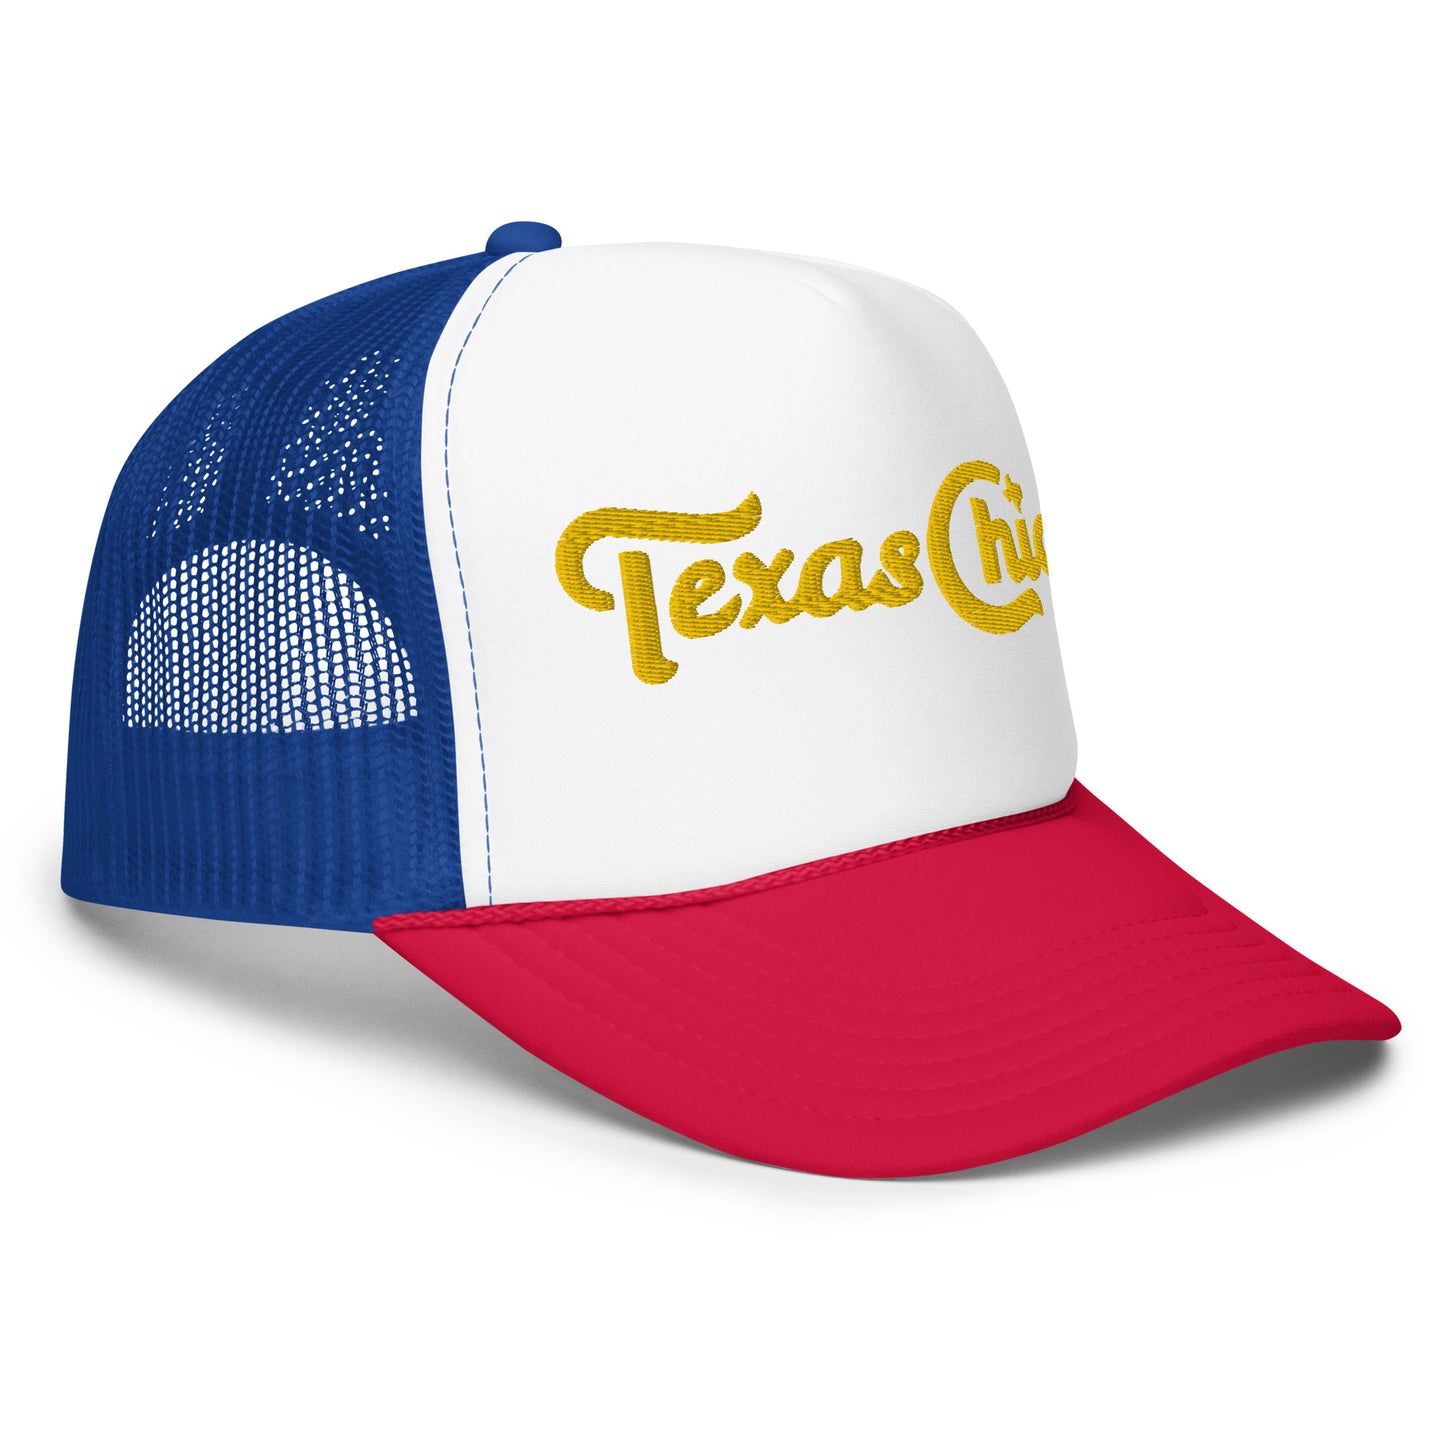 Sombrero camionero de espuma bordado Texas Chica